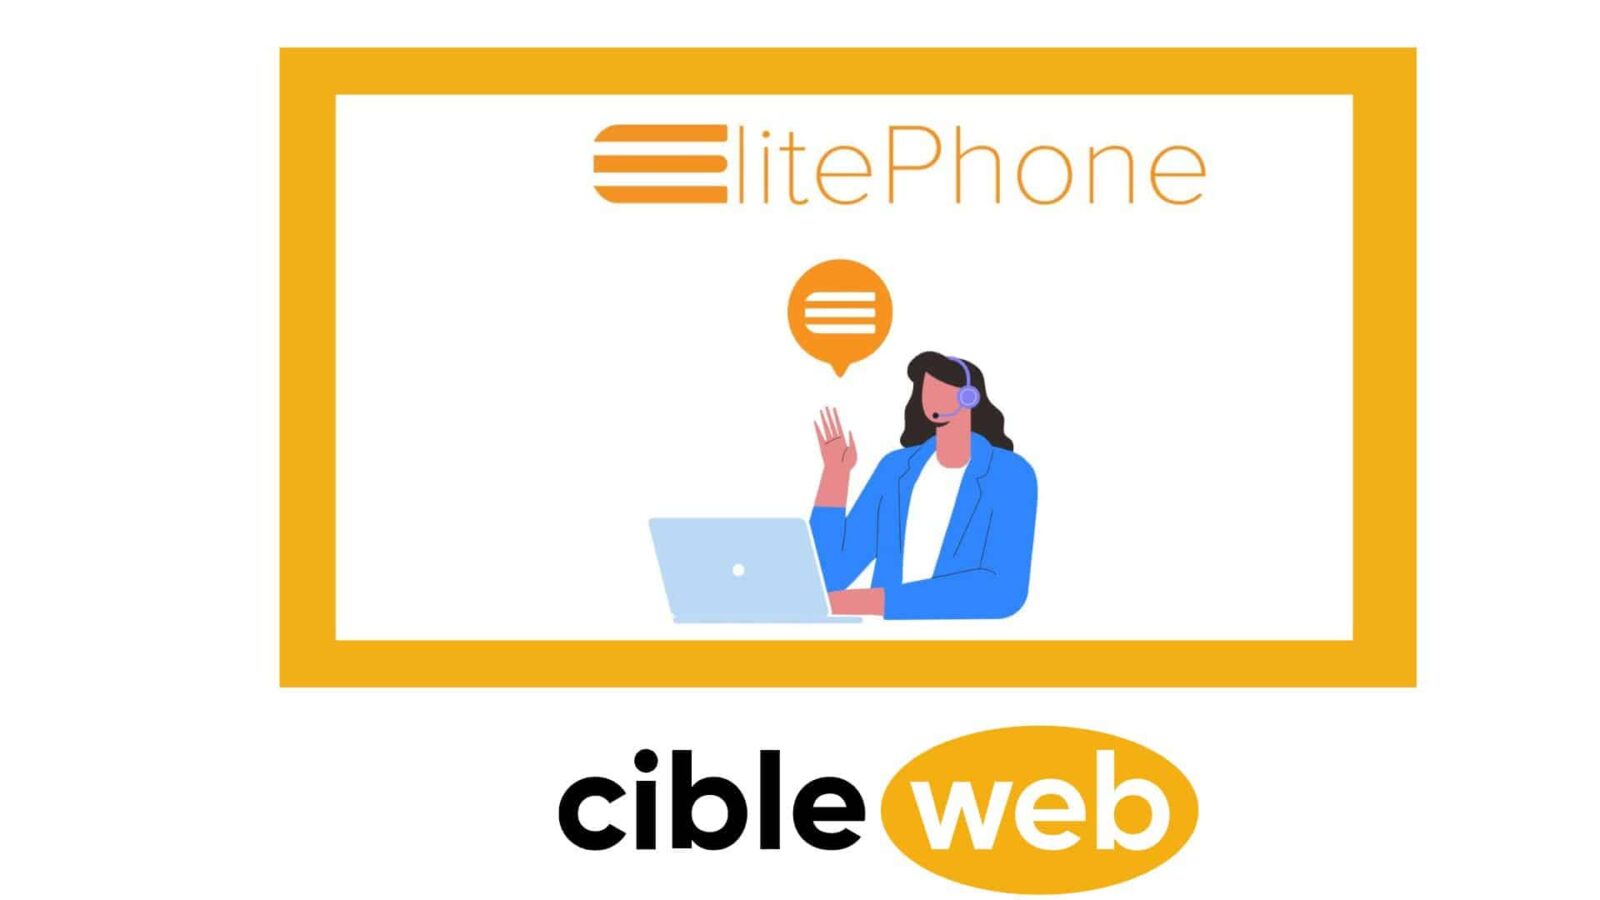 Cibleweb-Interview-Elitephone